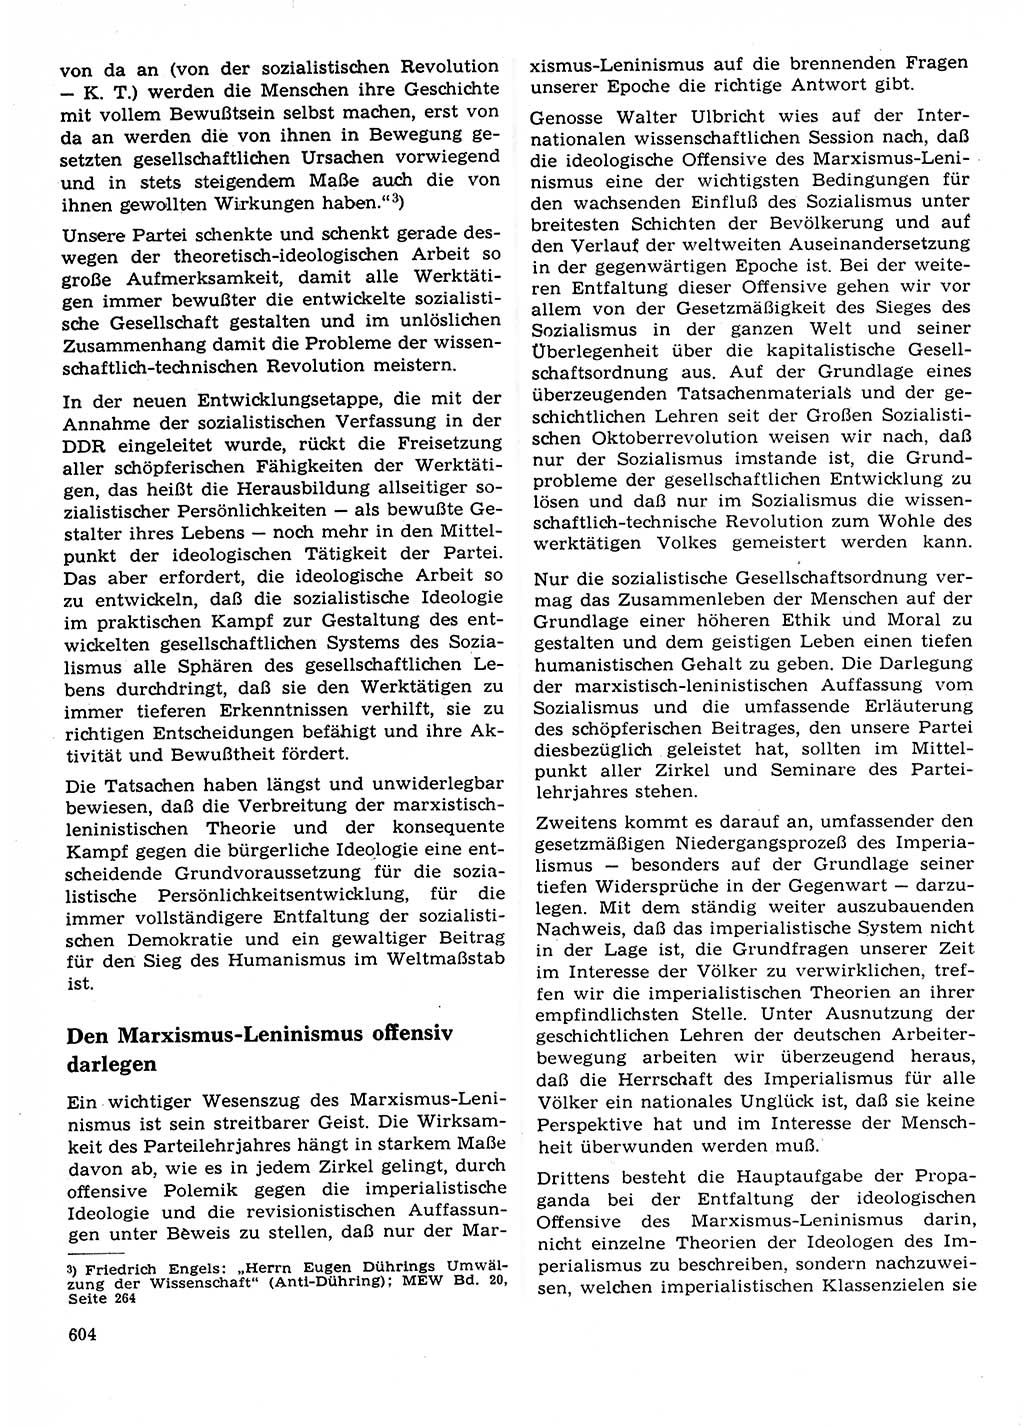 Neuer Weg (NW), Organ des Zentralkomitees (ZK) der SED (Sozialistische Einheitspartei Deutschlands) für Fragen des Parteilebens, 23. Jahrgang [Deutsche Demokratische Republik (DDR)] 1968, Seite 604 (NW ZK SED DDR 1968, S. 604)